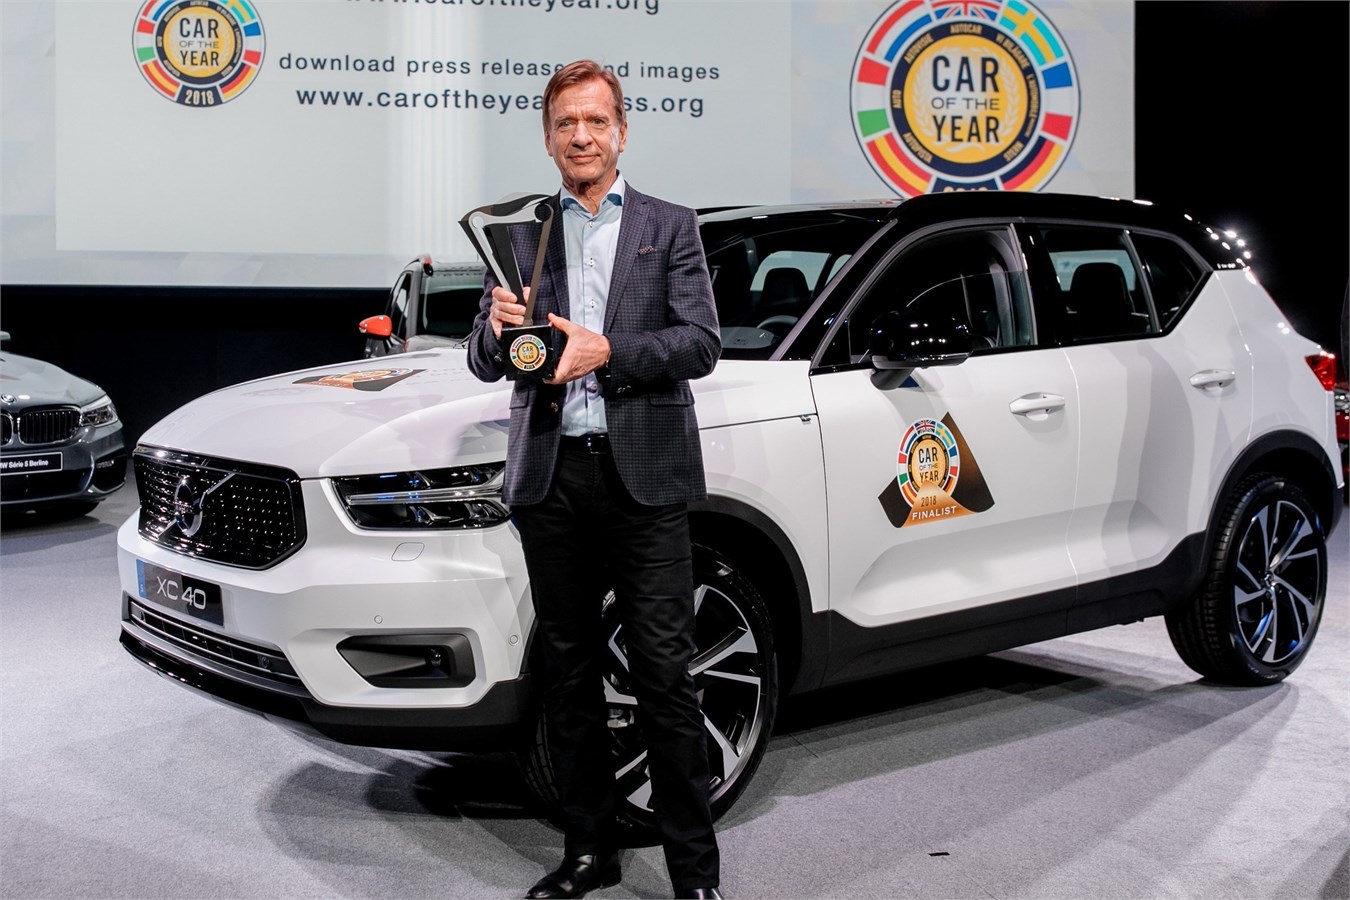 沃尔沃汽车集团总裁兼首席执行官汉肯·塞缪尔森先生领取“欧洲年度车”奖项